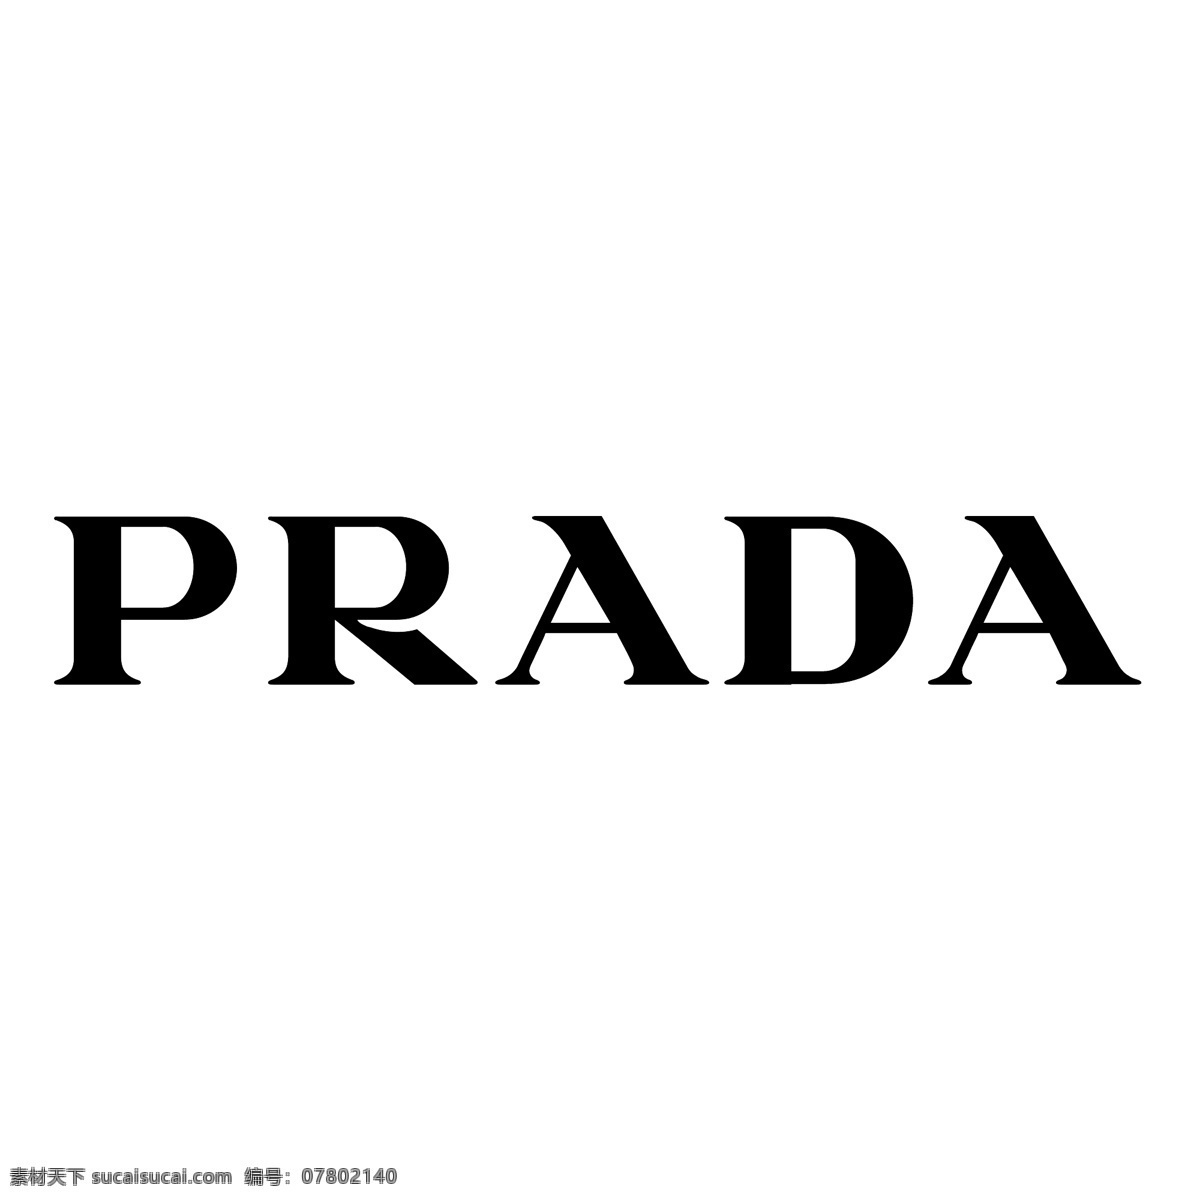 普拉达 矢量标志下载 免费矢量标识 商标 品牌标识 标识 矢量 免费 品牌 公司 白色